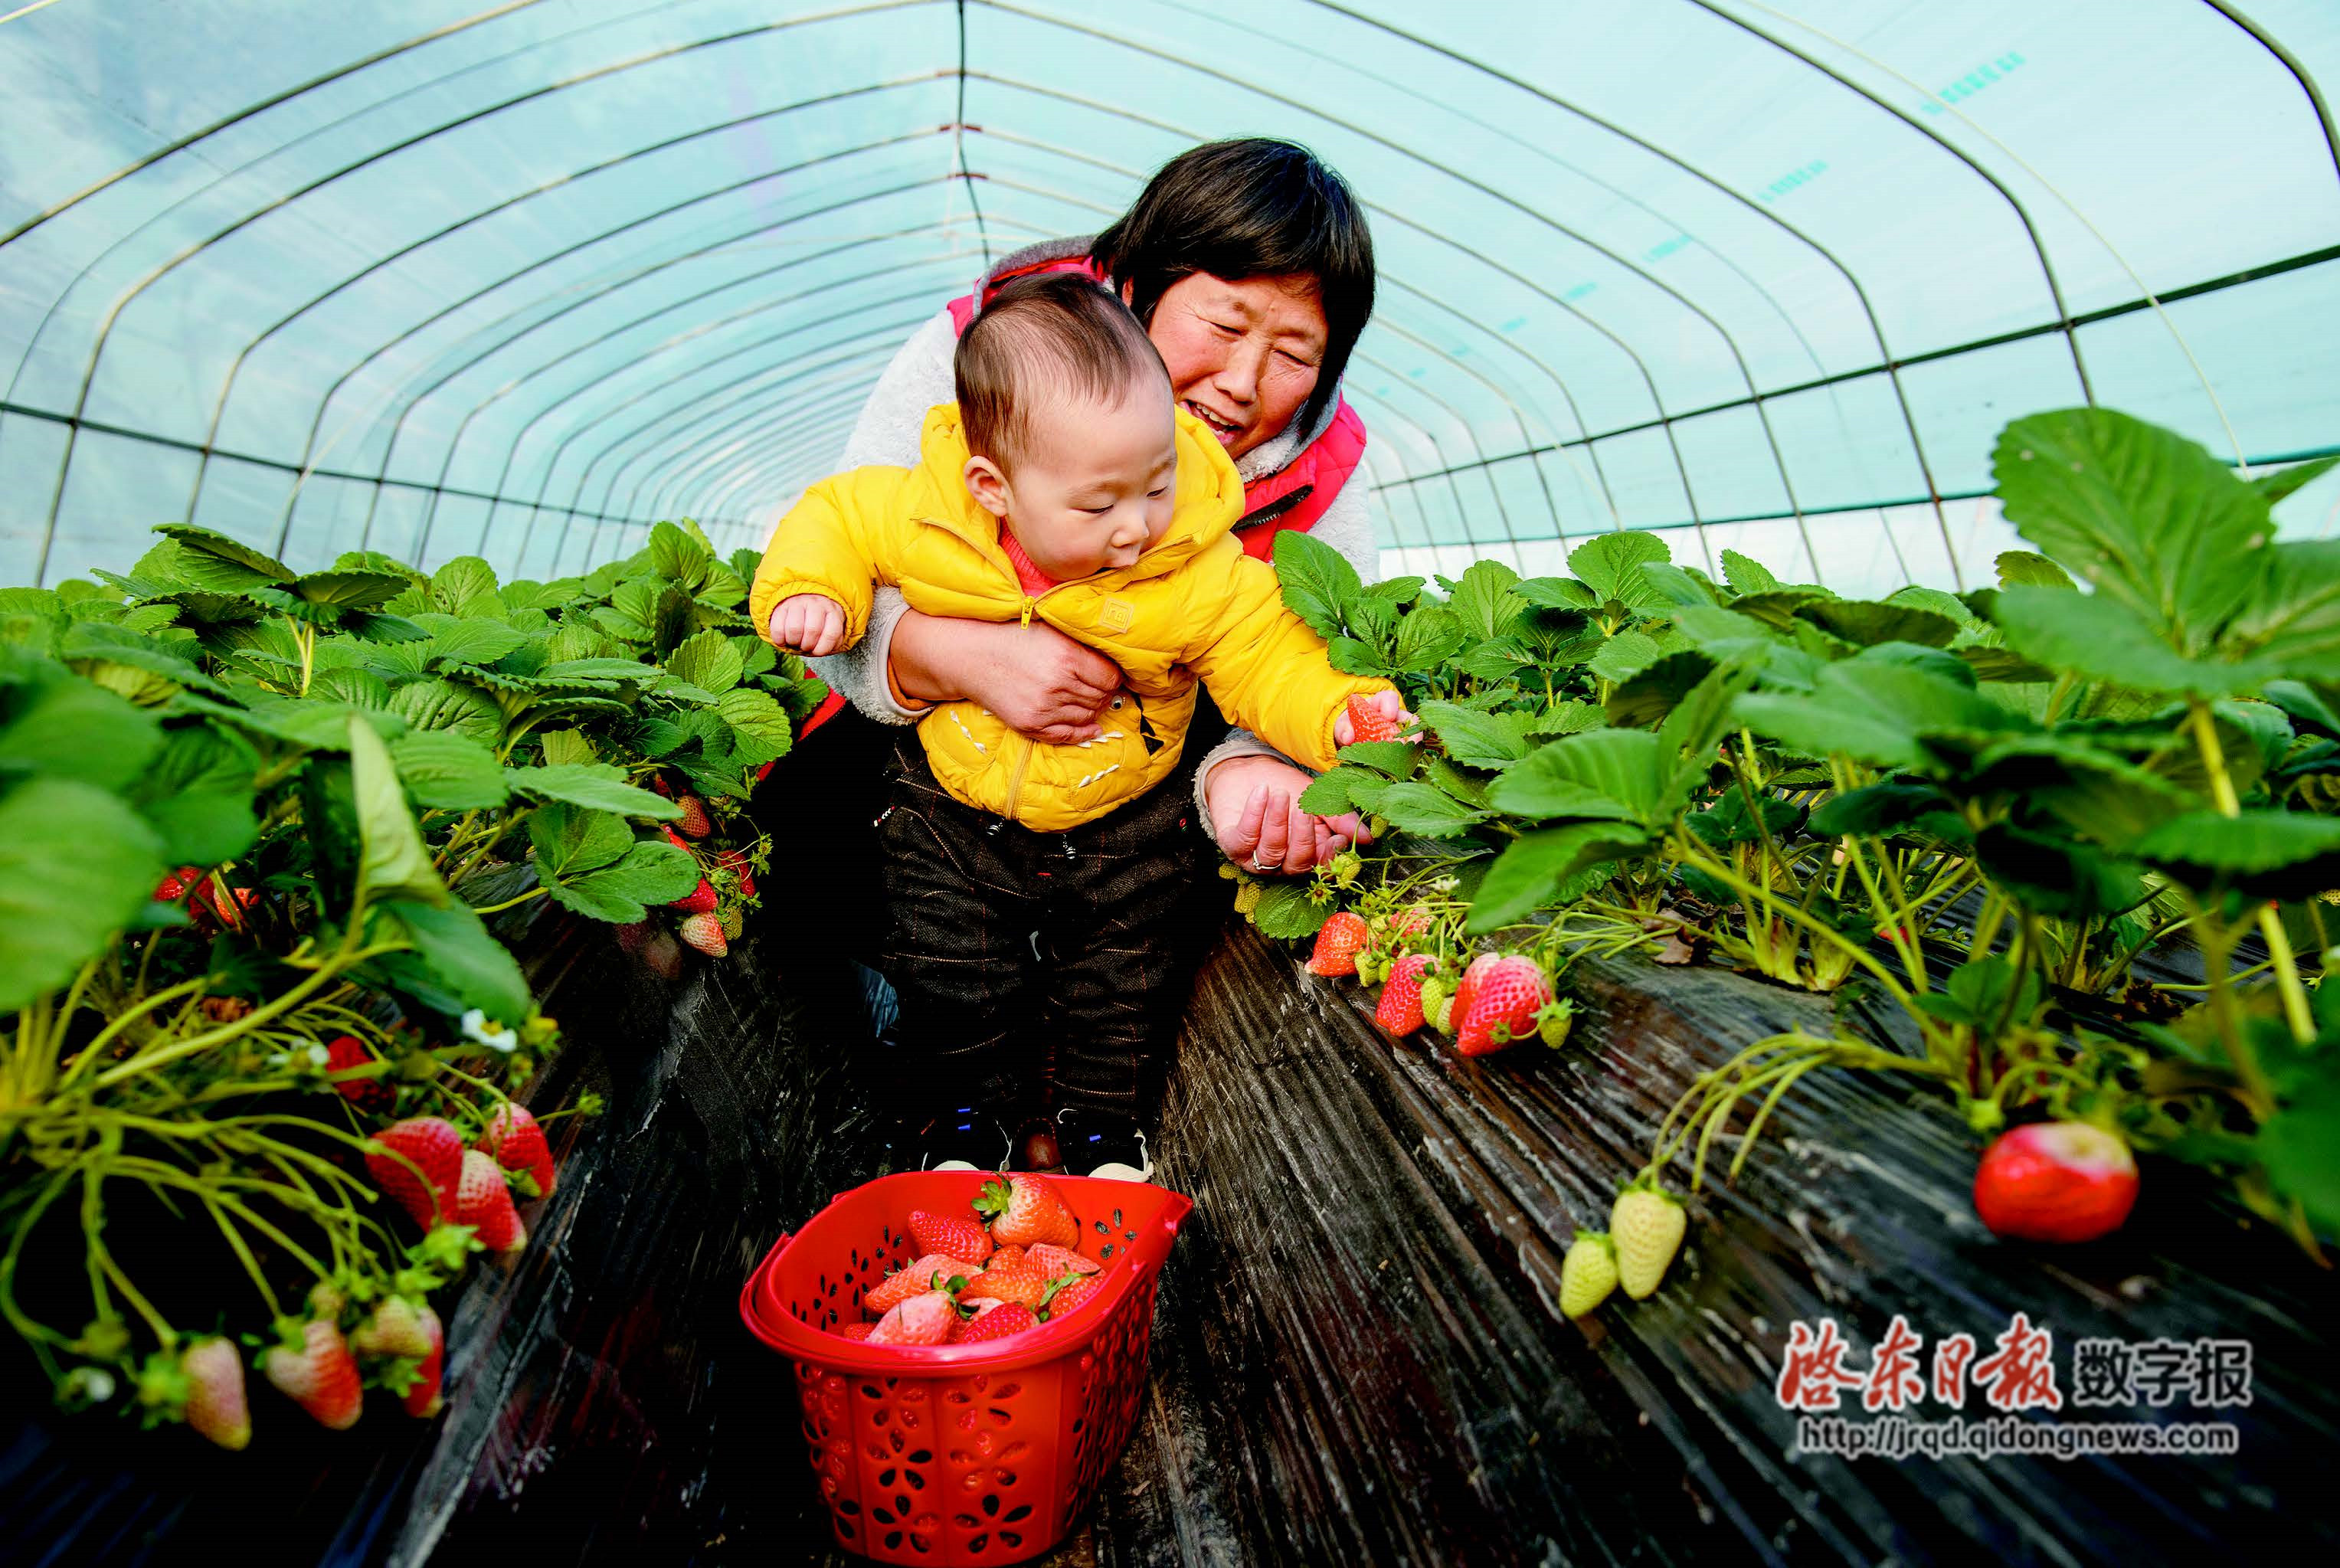 小朋友在忻府区欣欣生态园果蔬大棚采摘草莓-忻州在线 忻州新闻 忻州日报网 忻州新闻网